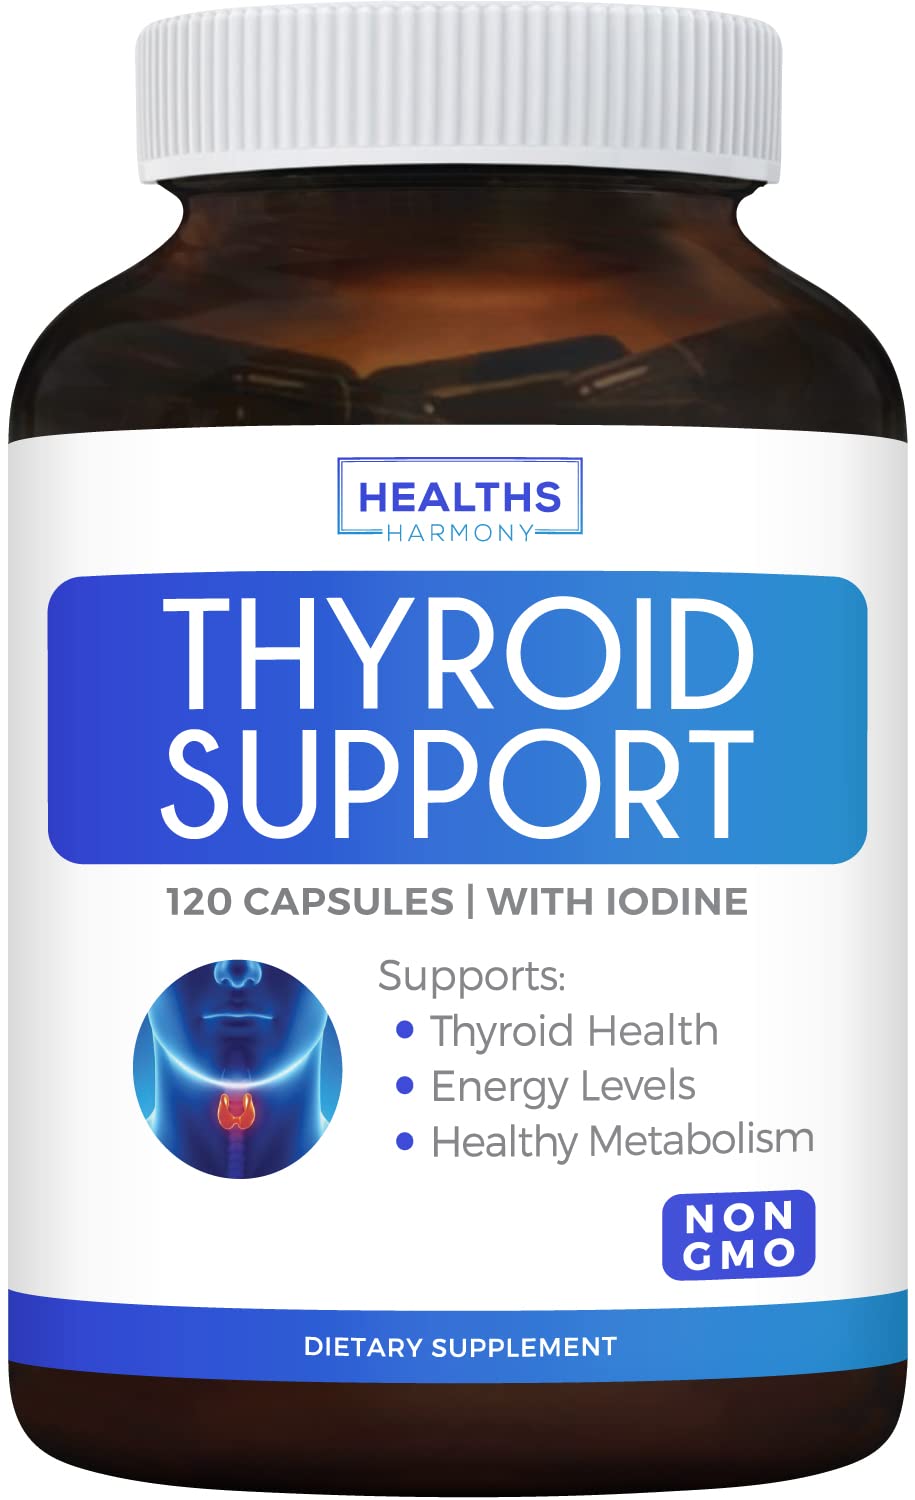 iodine and thyroid health